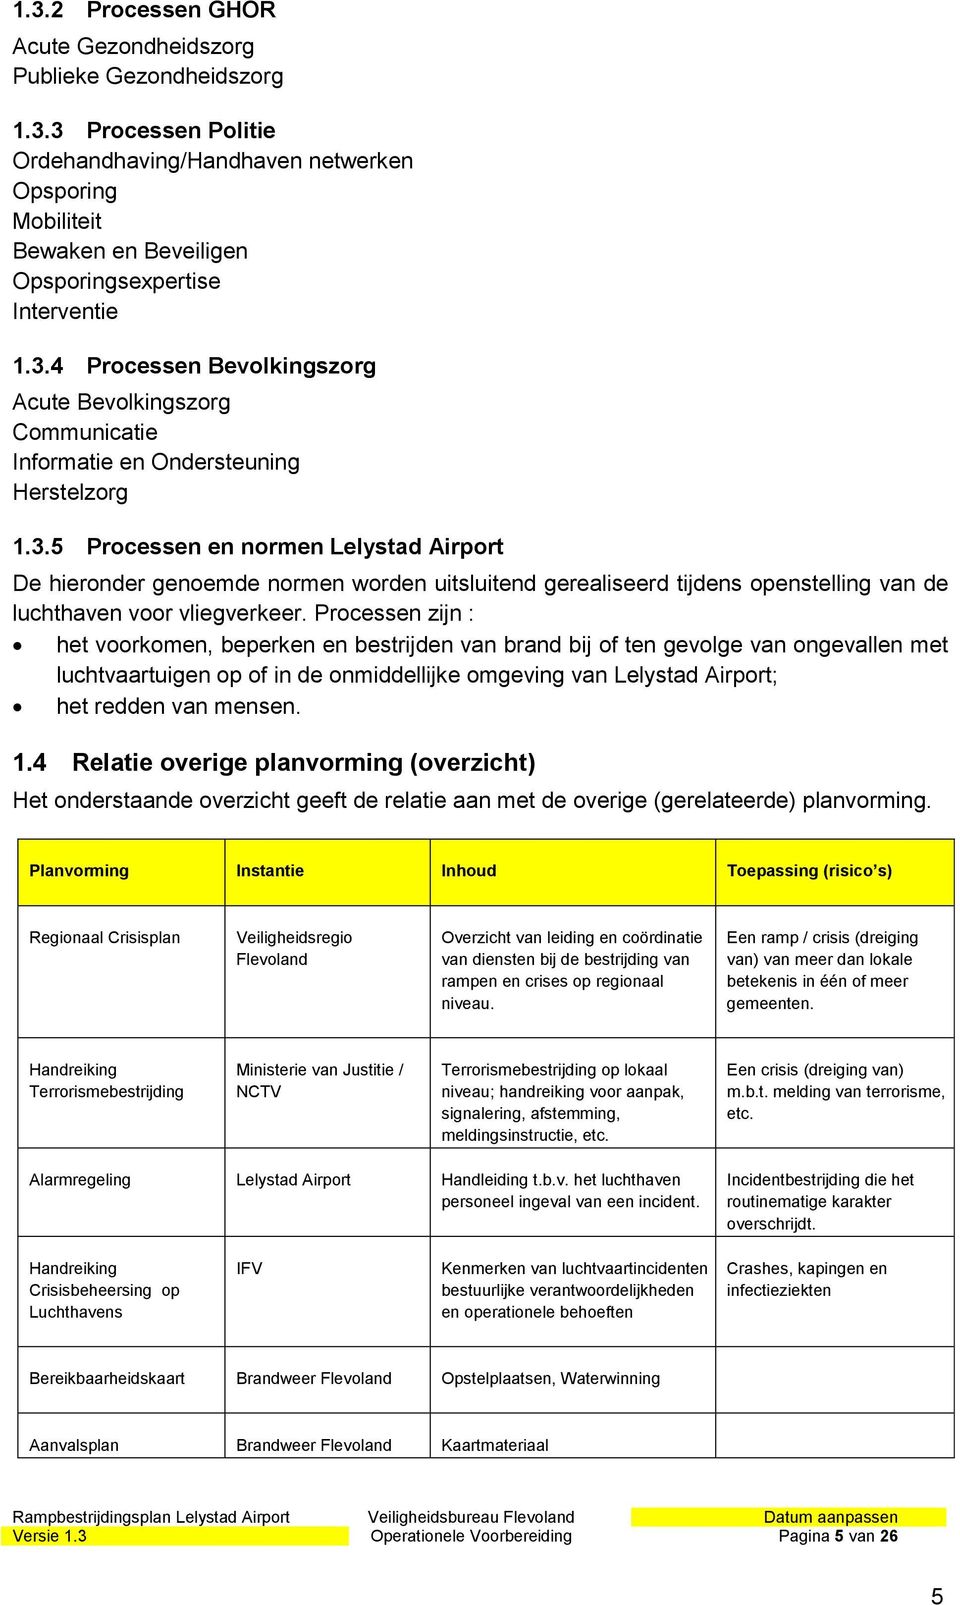 Processen zijn : het voorkomen, beperken en bestrijden van brand bij of ten gevolge van ongevallen met luchtvaartuigen op of in de onmiddellijke omgeving van Lelystad Airport; het redden van mensen.